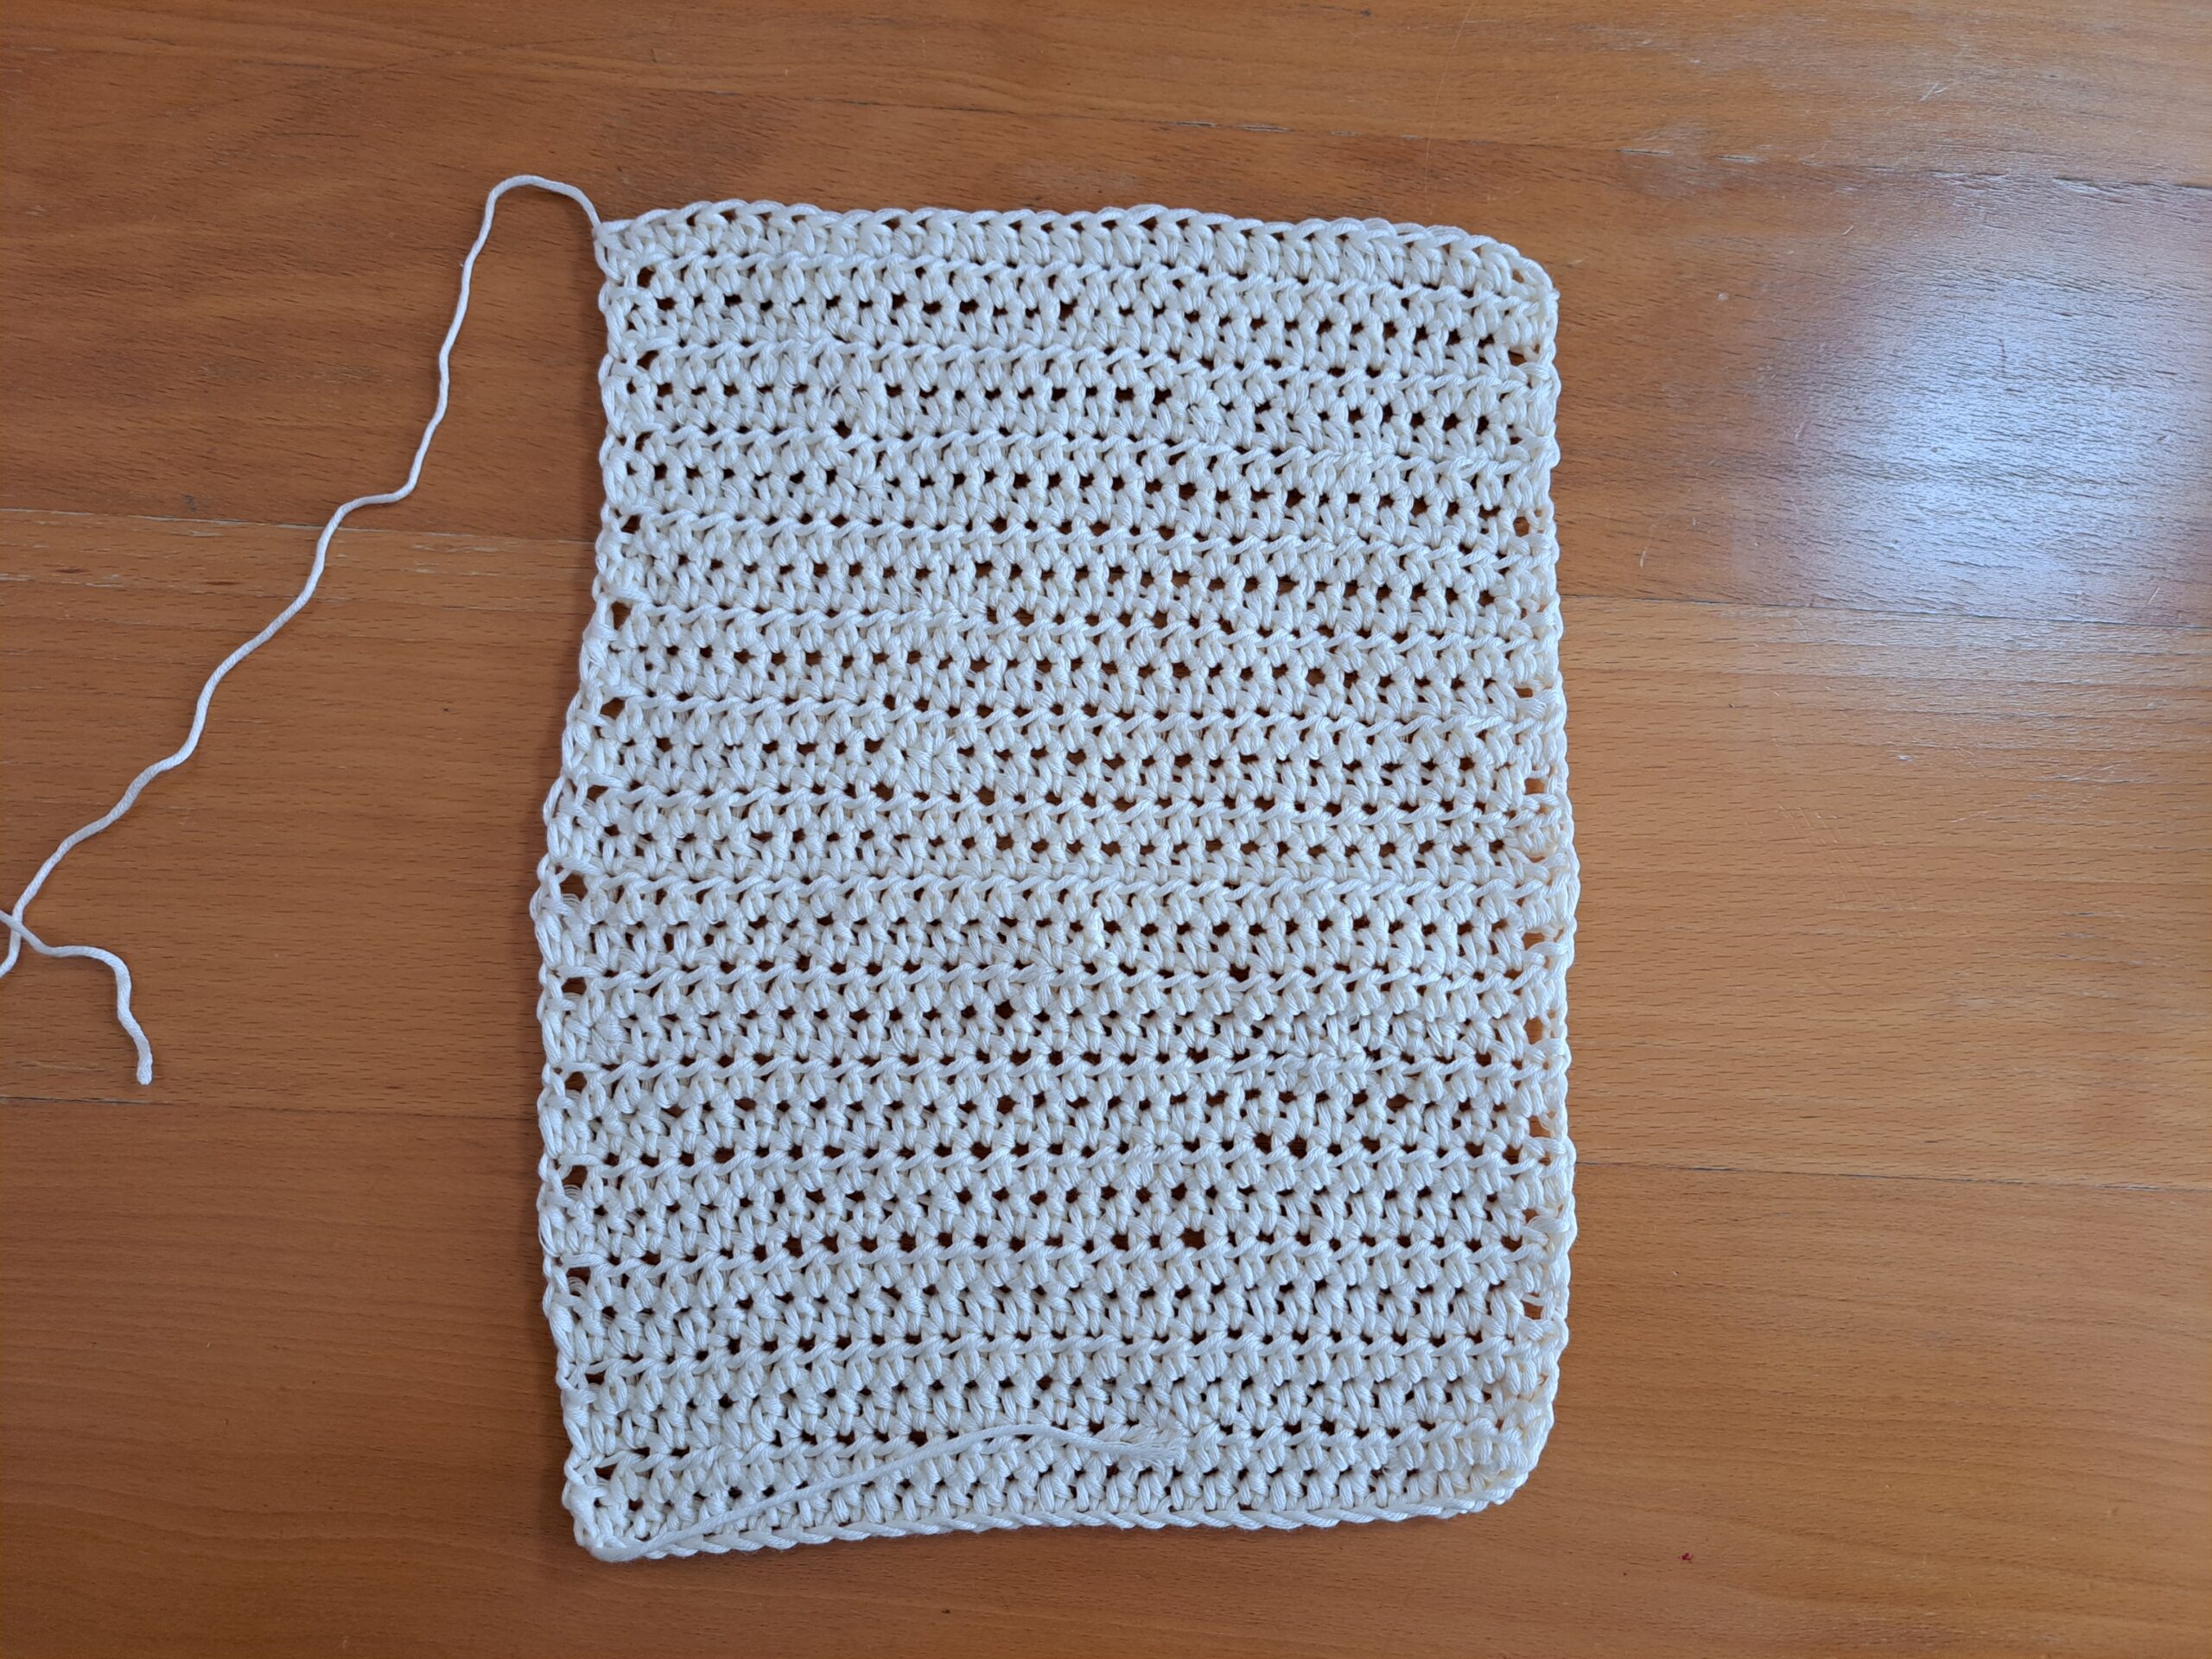 Crochet Dainty Purse Free Pattern